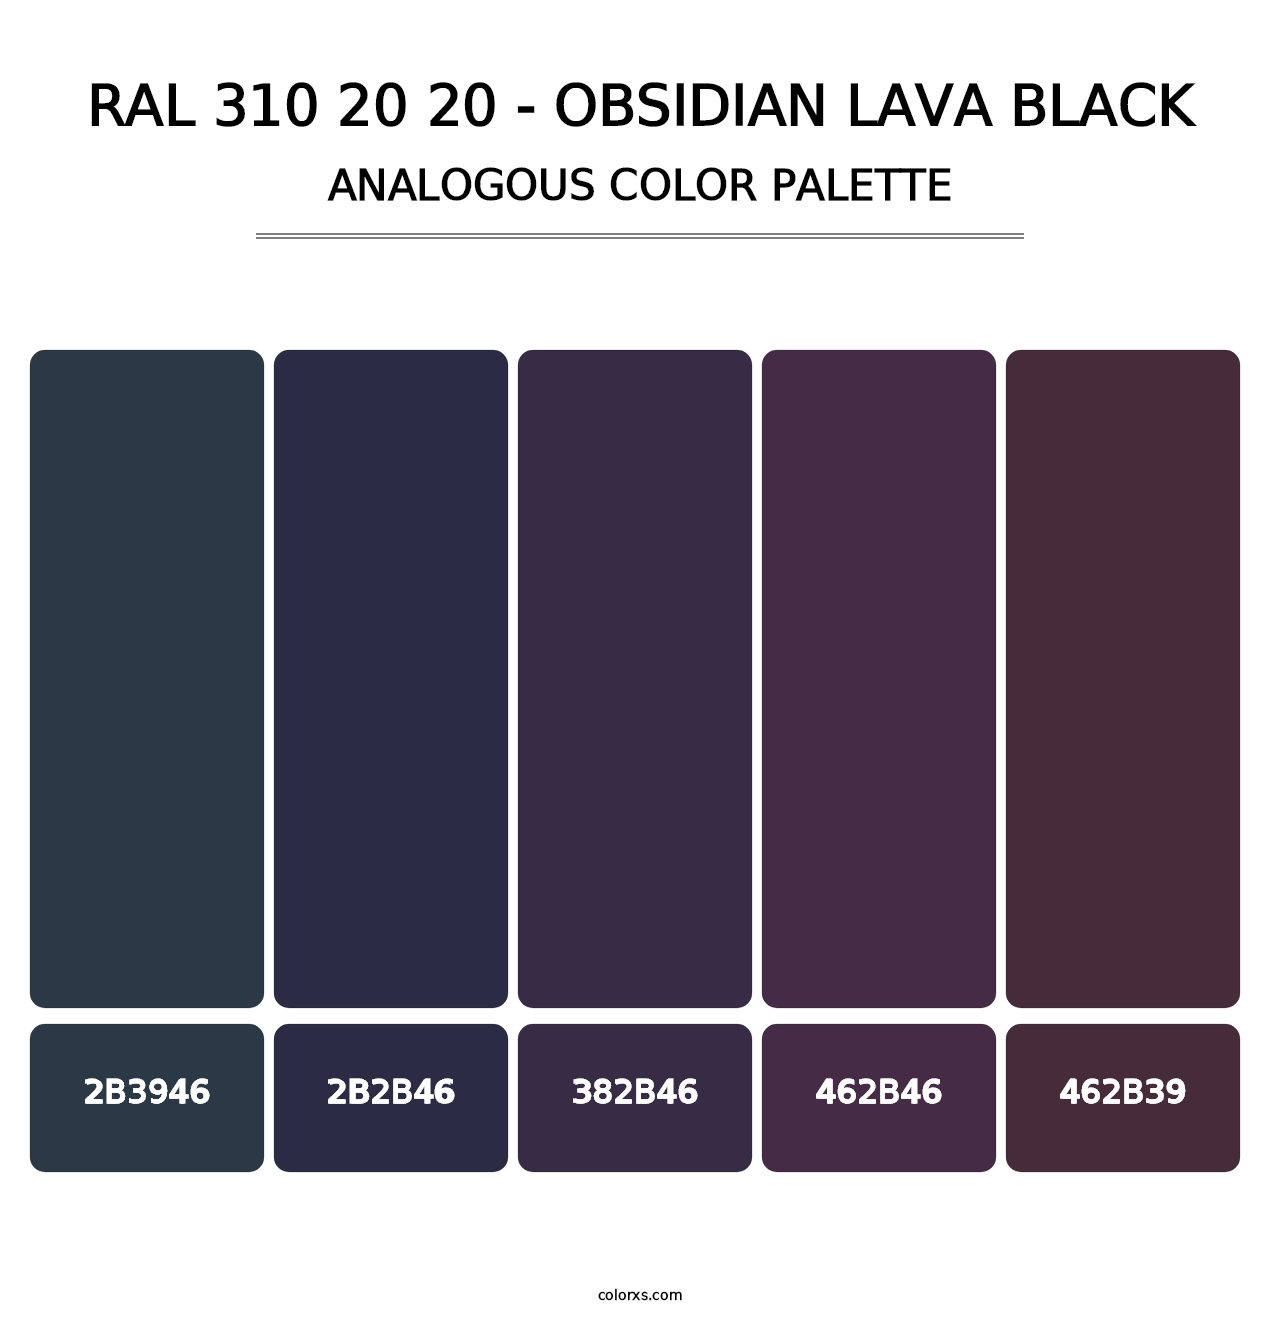 RAL 310 20 20 - Obsidian Lava Black - Analogous Color Palette